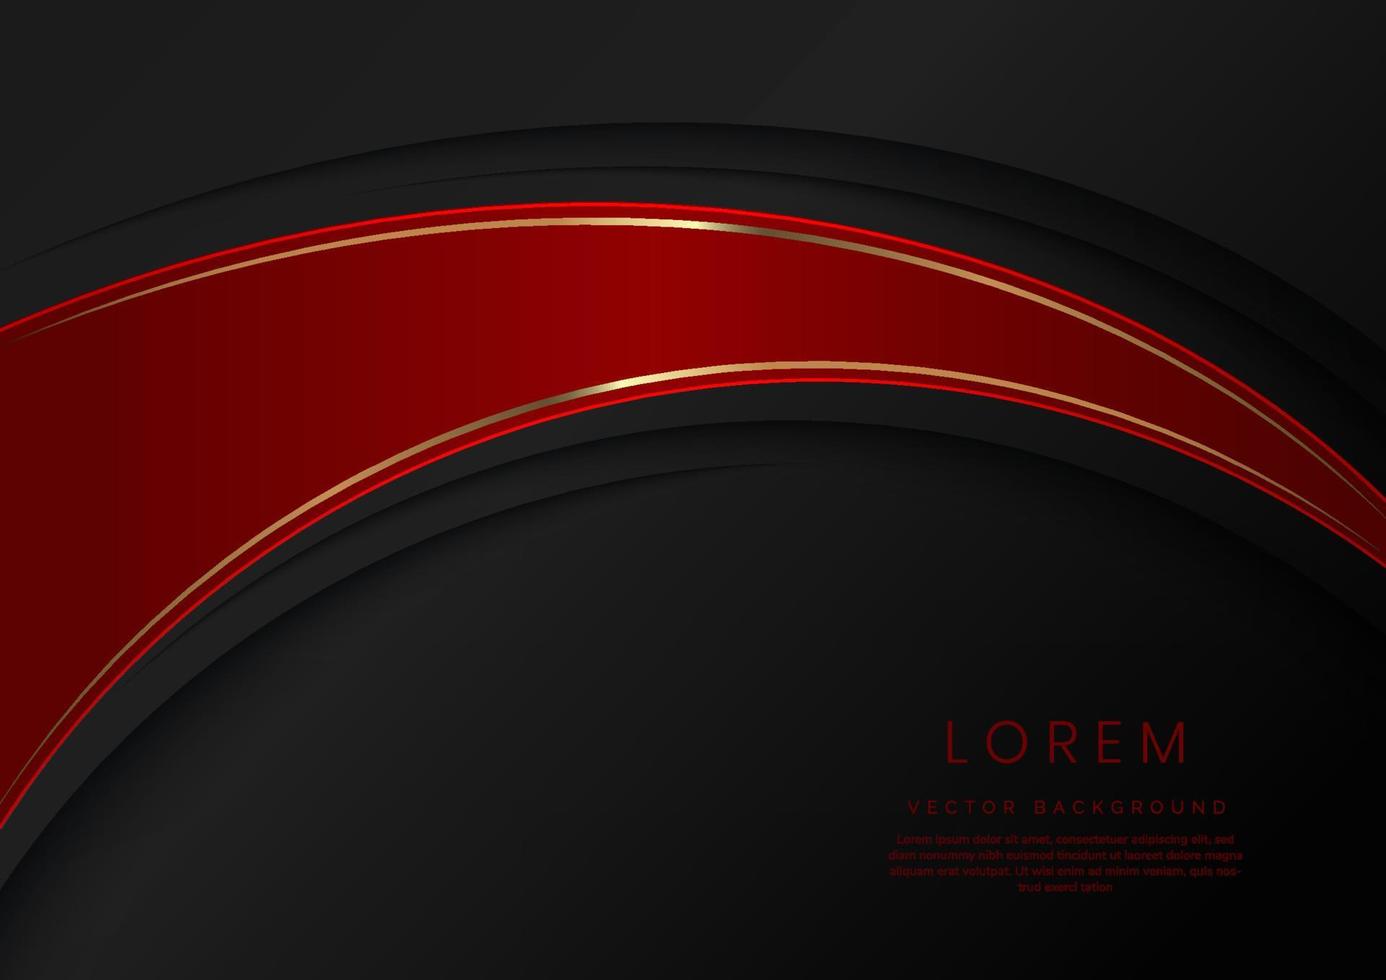 courbes rouges de luxe abstraites avec une bordure dorée élégante sur un espace de fond noir pour le texte. style de conception de modèle. vecteur